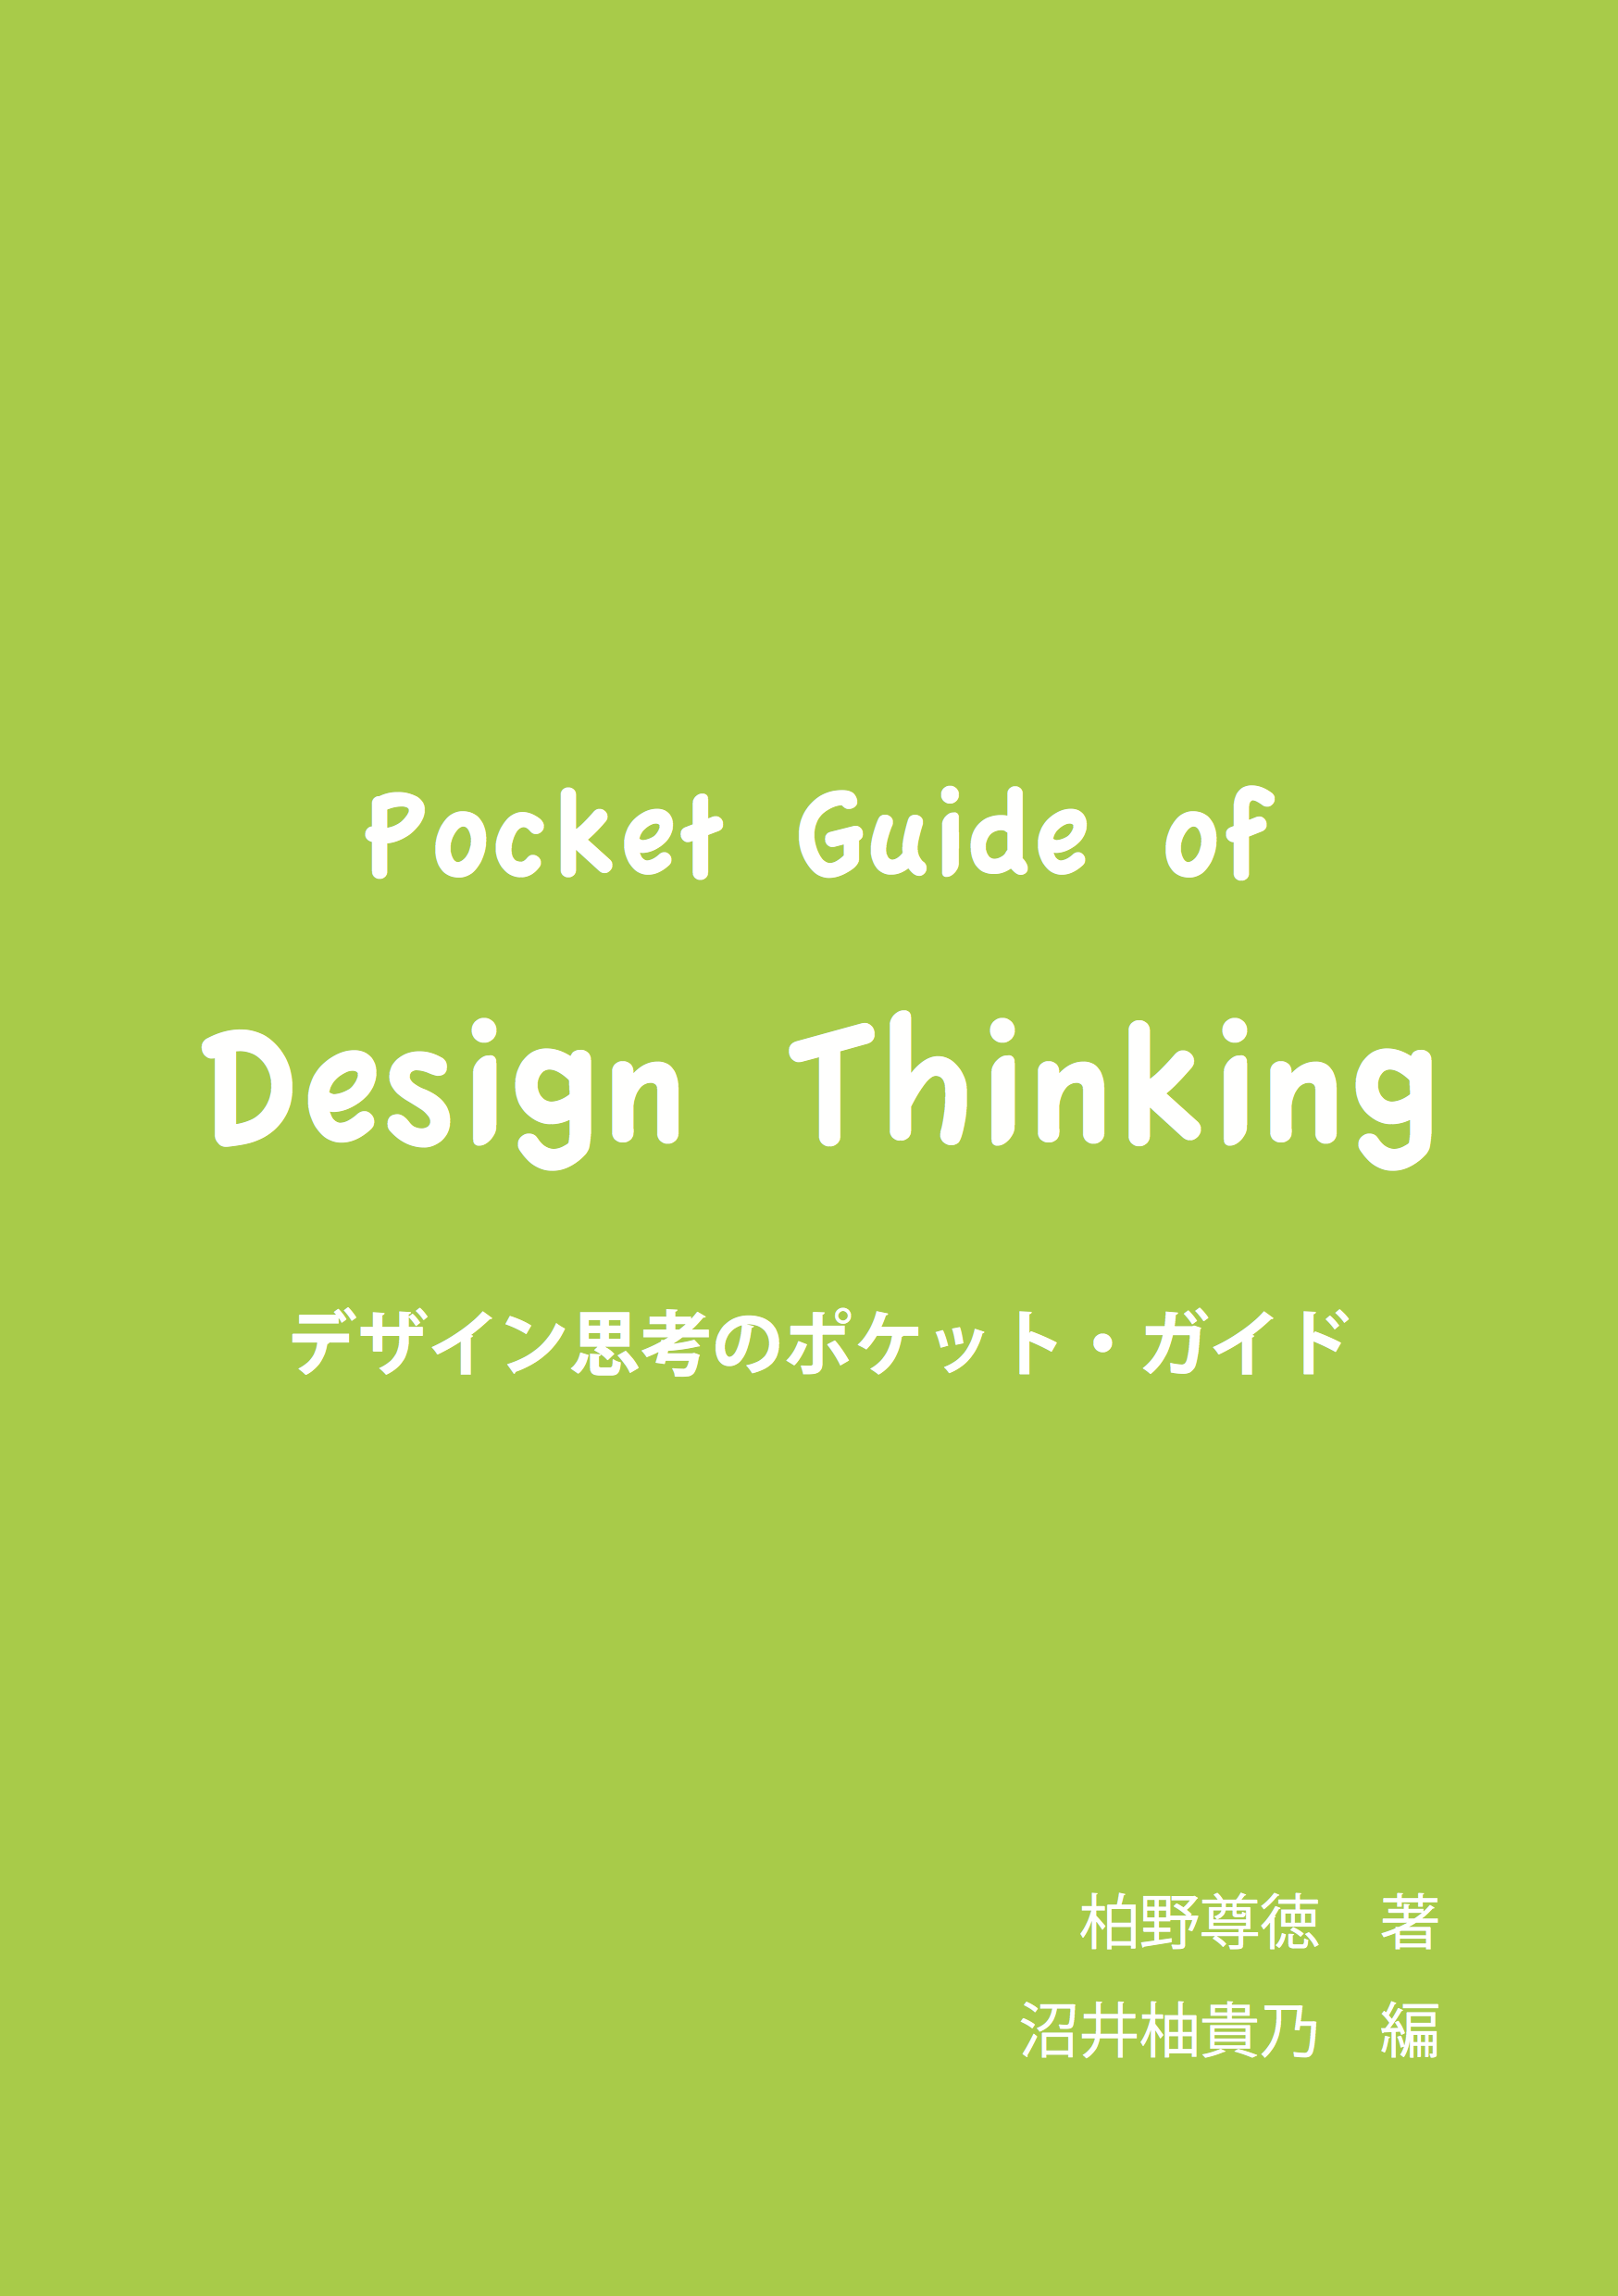 デザイン思考のポケット・ガイド -pocket guide of design thinking-